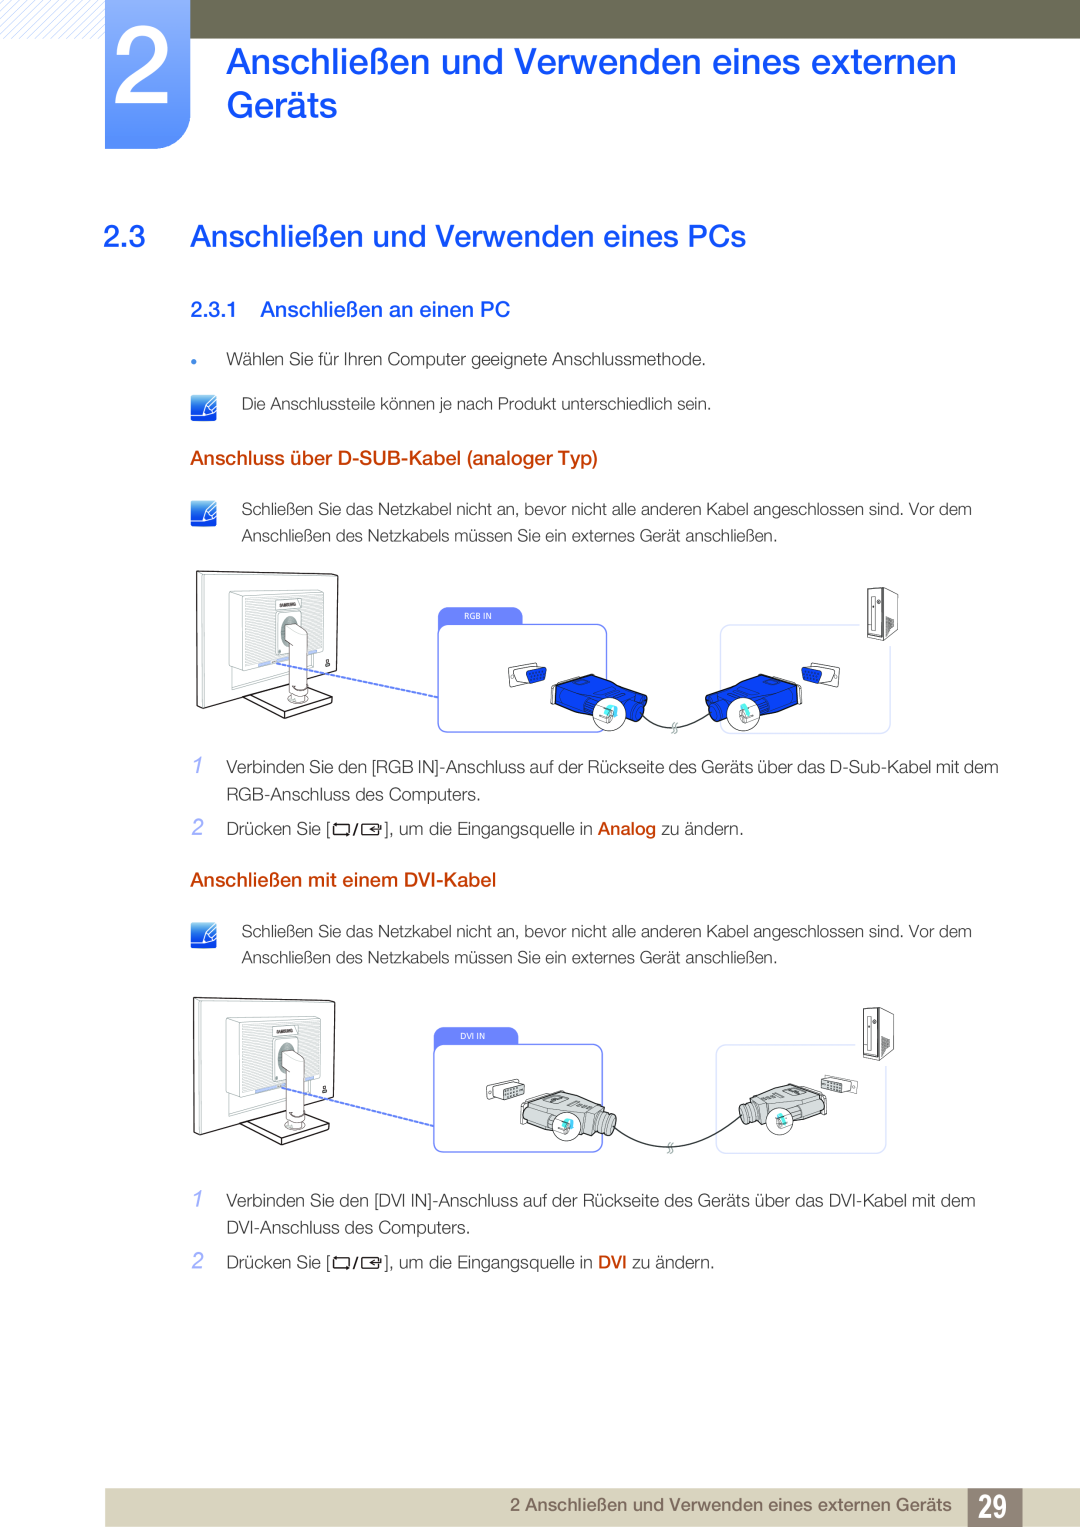 Samsung LS22C45KBSV/EN manual Anschließen und Verwenden eines PCs, Anschließen an einen PC, Anschließen mit einem DVI-Kabel 